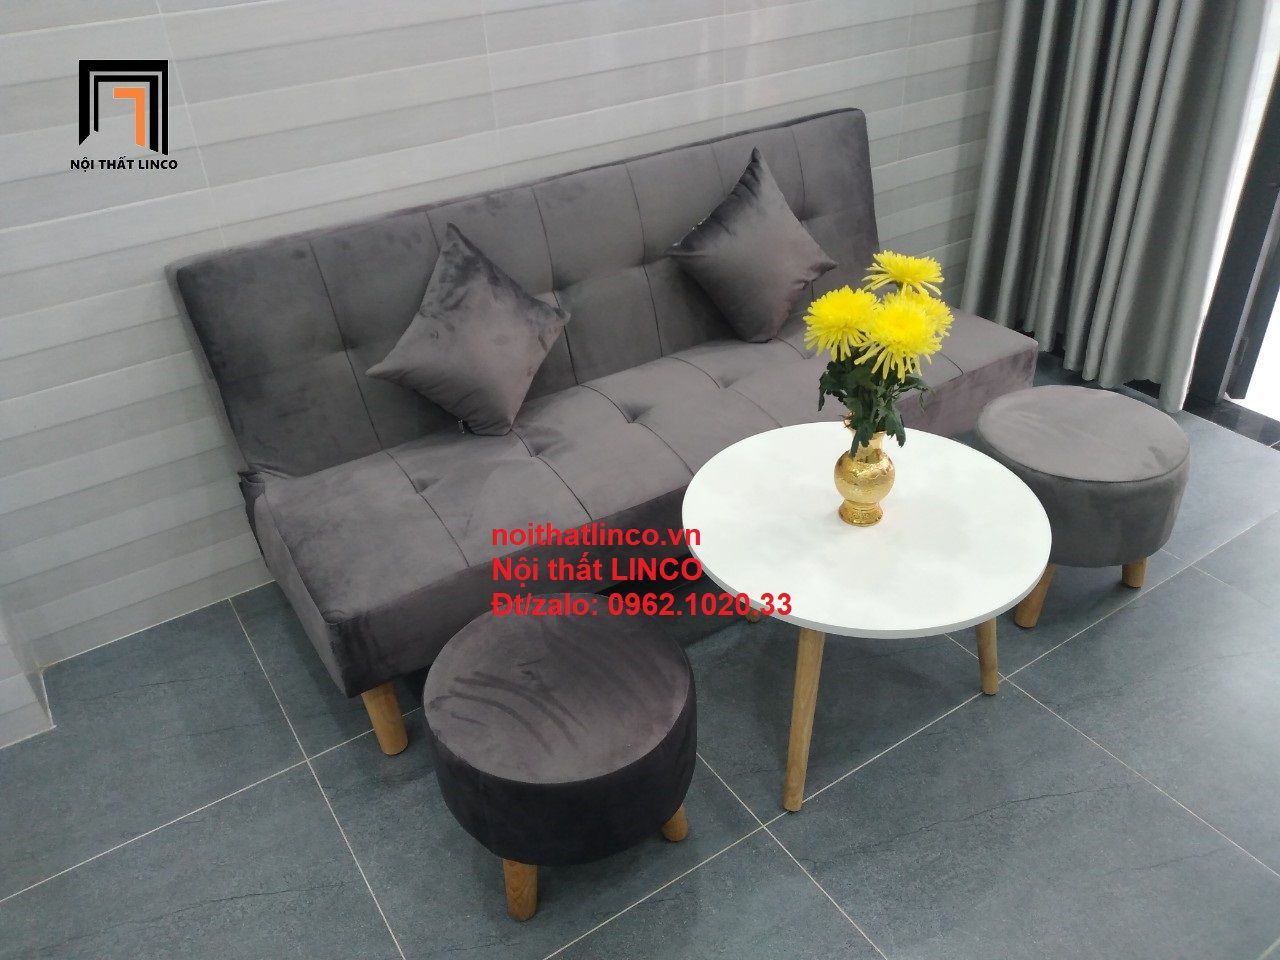  Bộ ghế sofa bed bật giường nằm SFG 1m7 màu xám đen vải nhung 